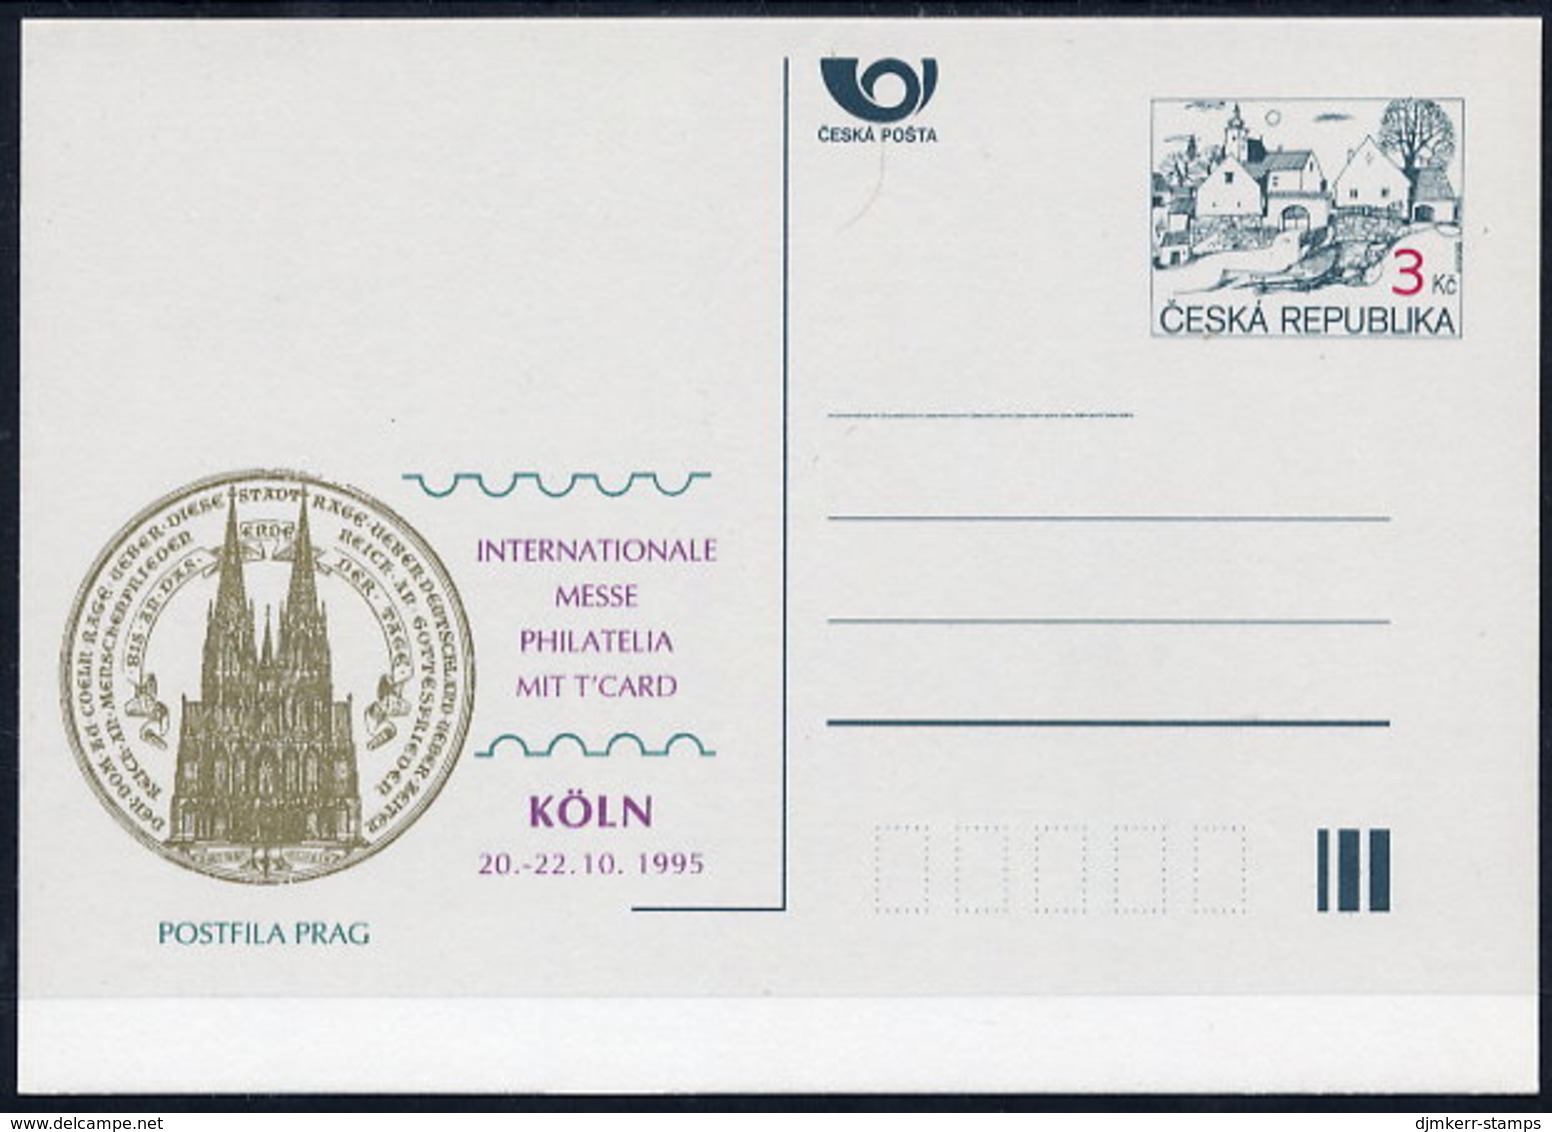 CZECH REPUBLIC 1995 3 Kc.postcard Köln '95 Unused.  Michel P7-A5 - Cartes Postales